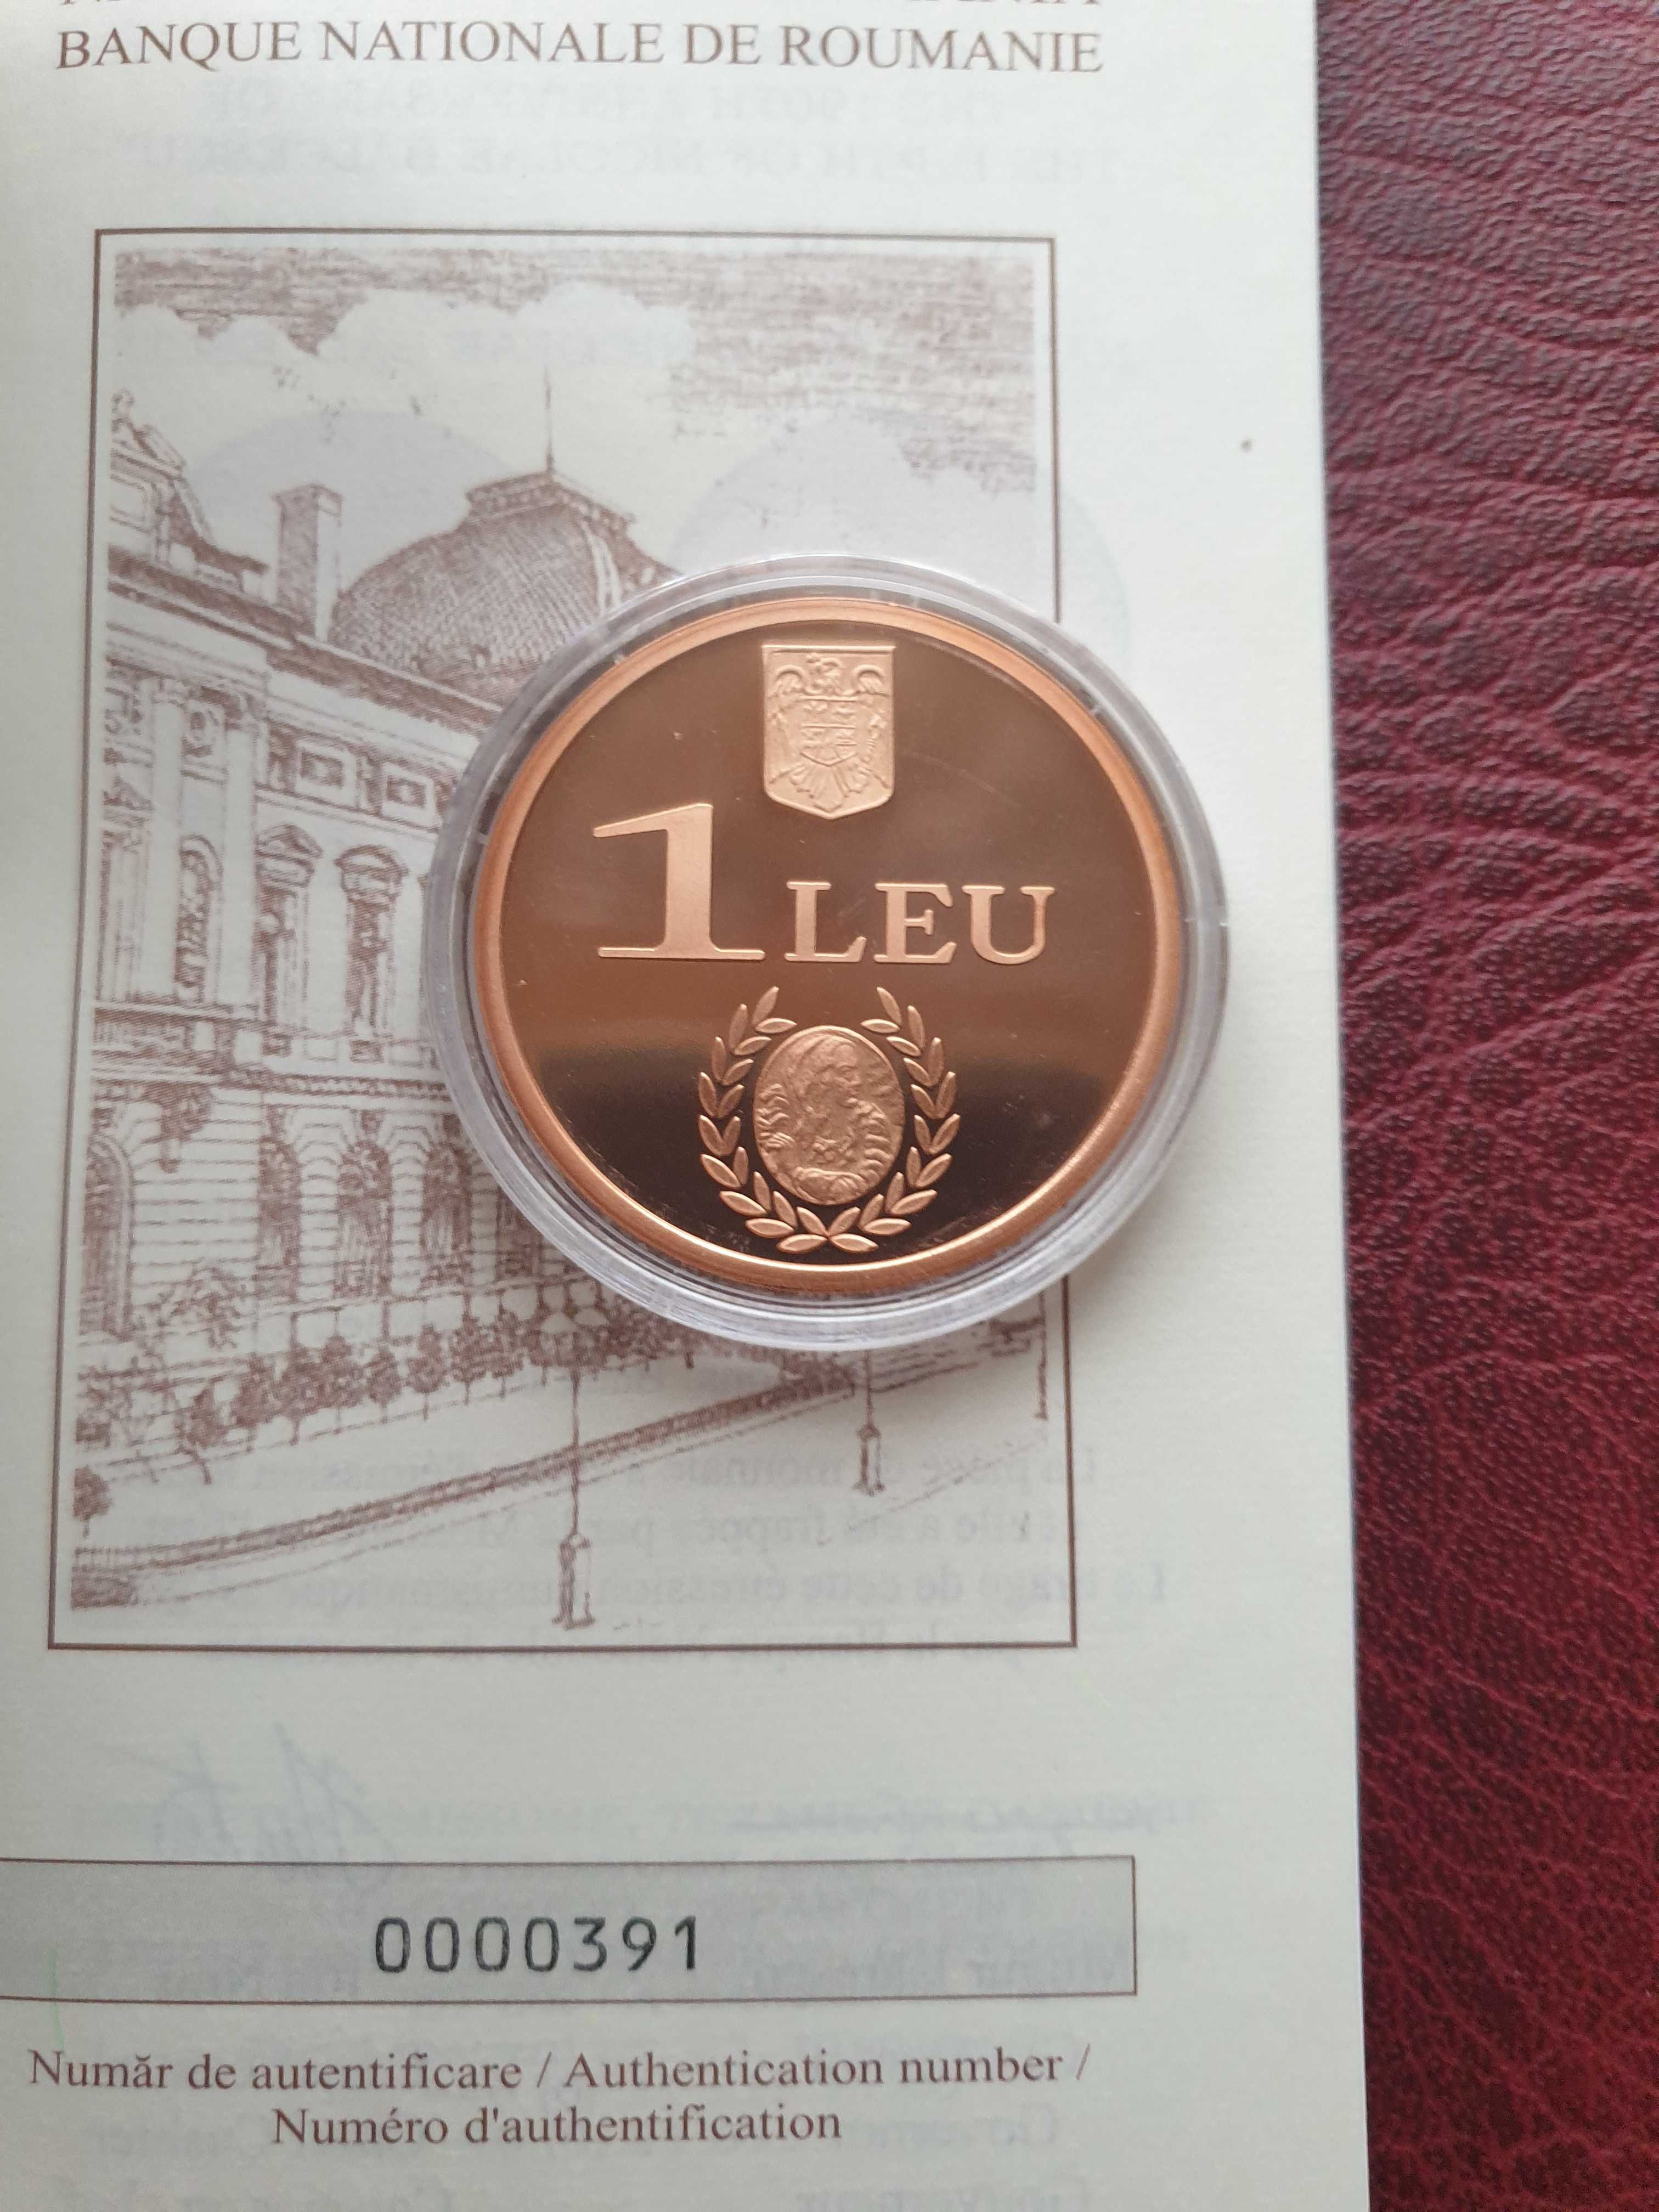 Monede comemorative 1 leu 2009/2010 PROOF tombac